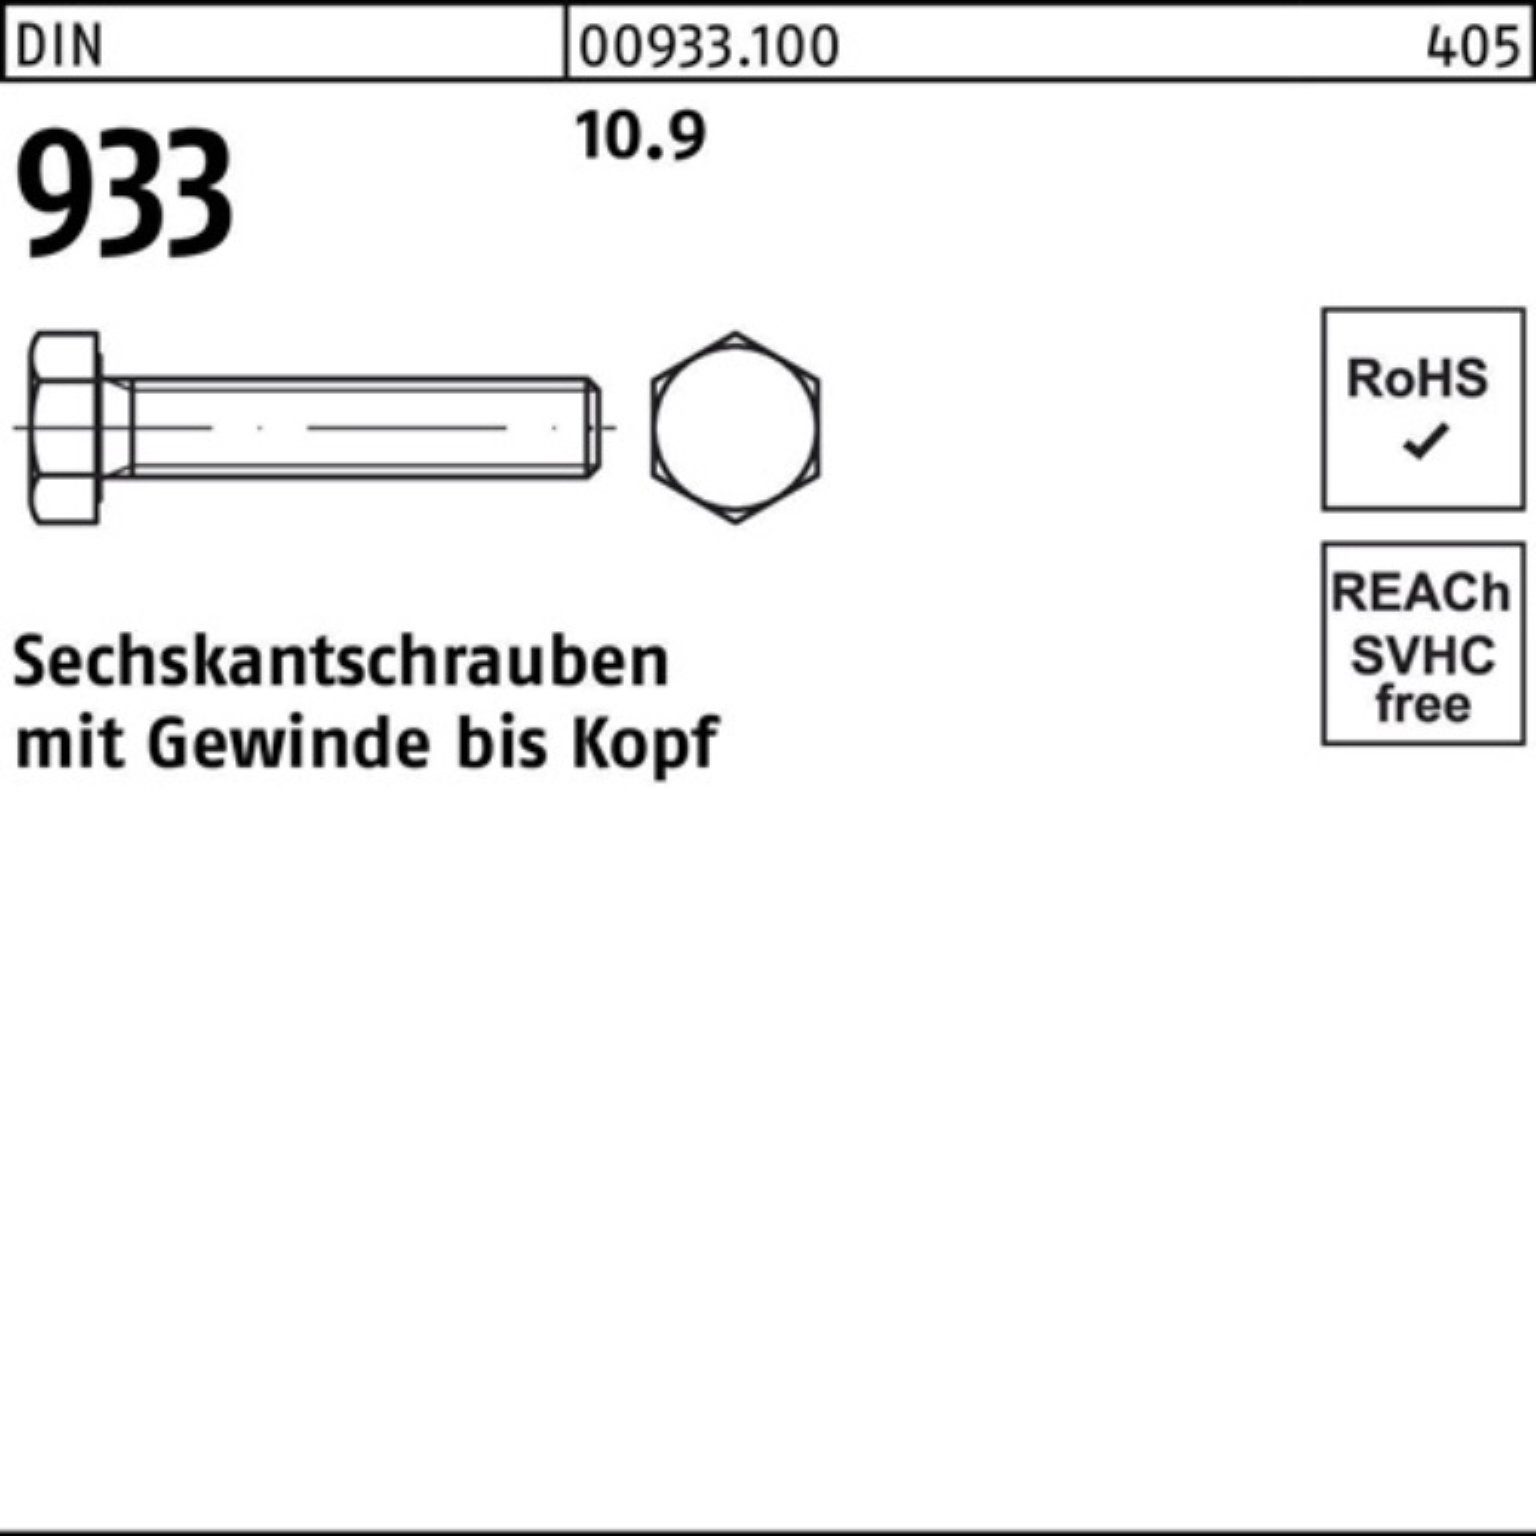 Reyher Sechskantschraube 100er Pack Stück 10.9 Sechskantschraube 933 M30x 1 DIN DIN VG 110 933